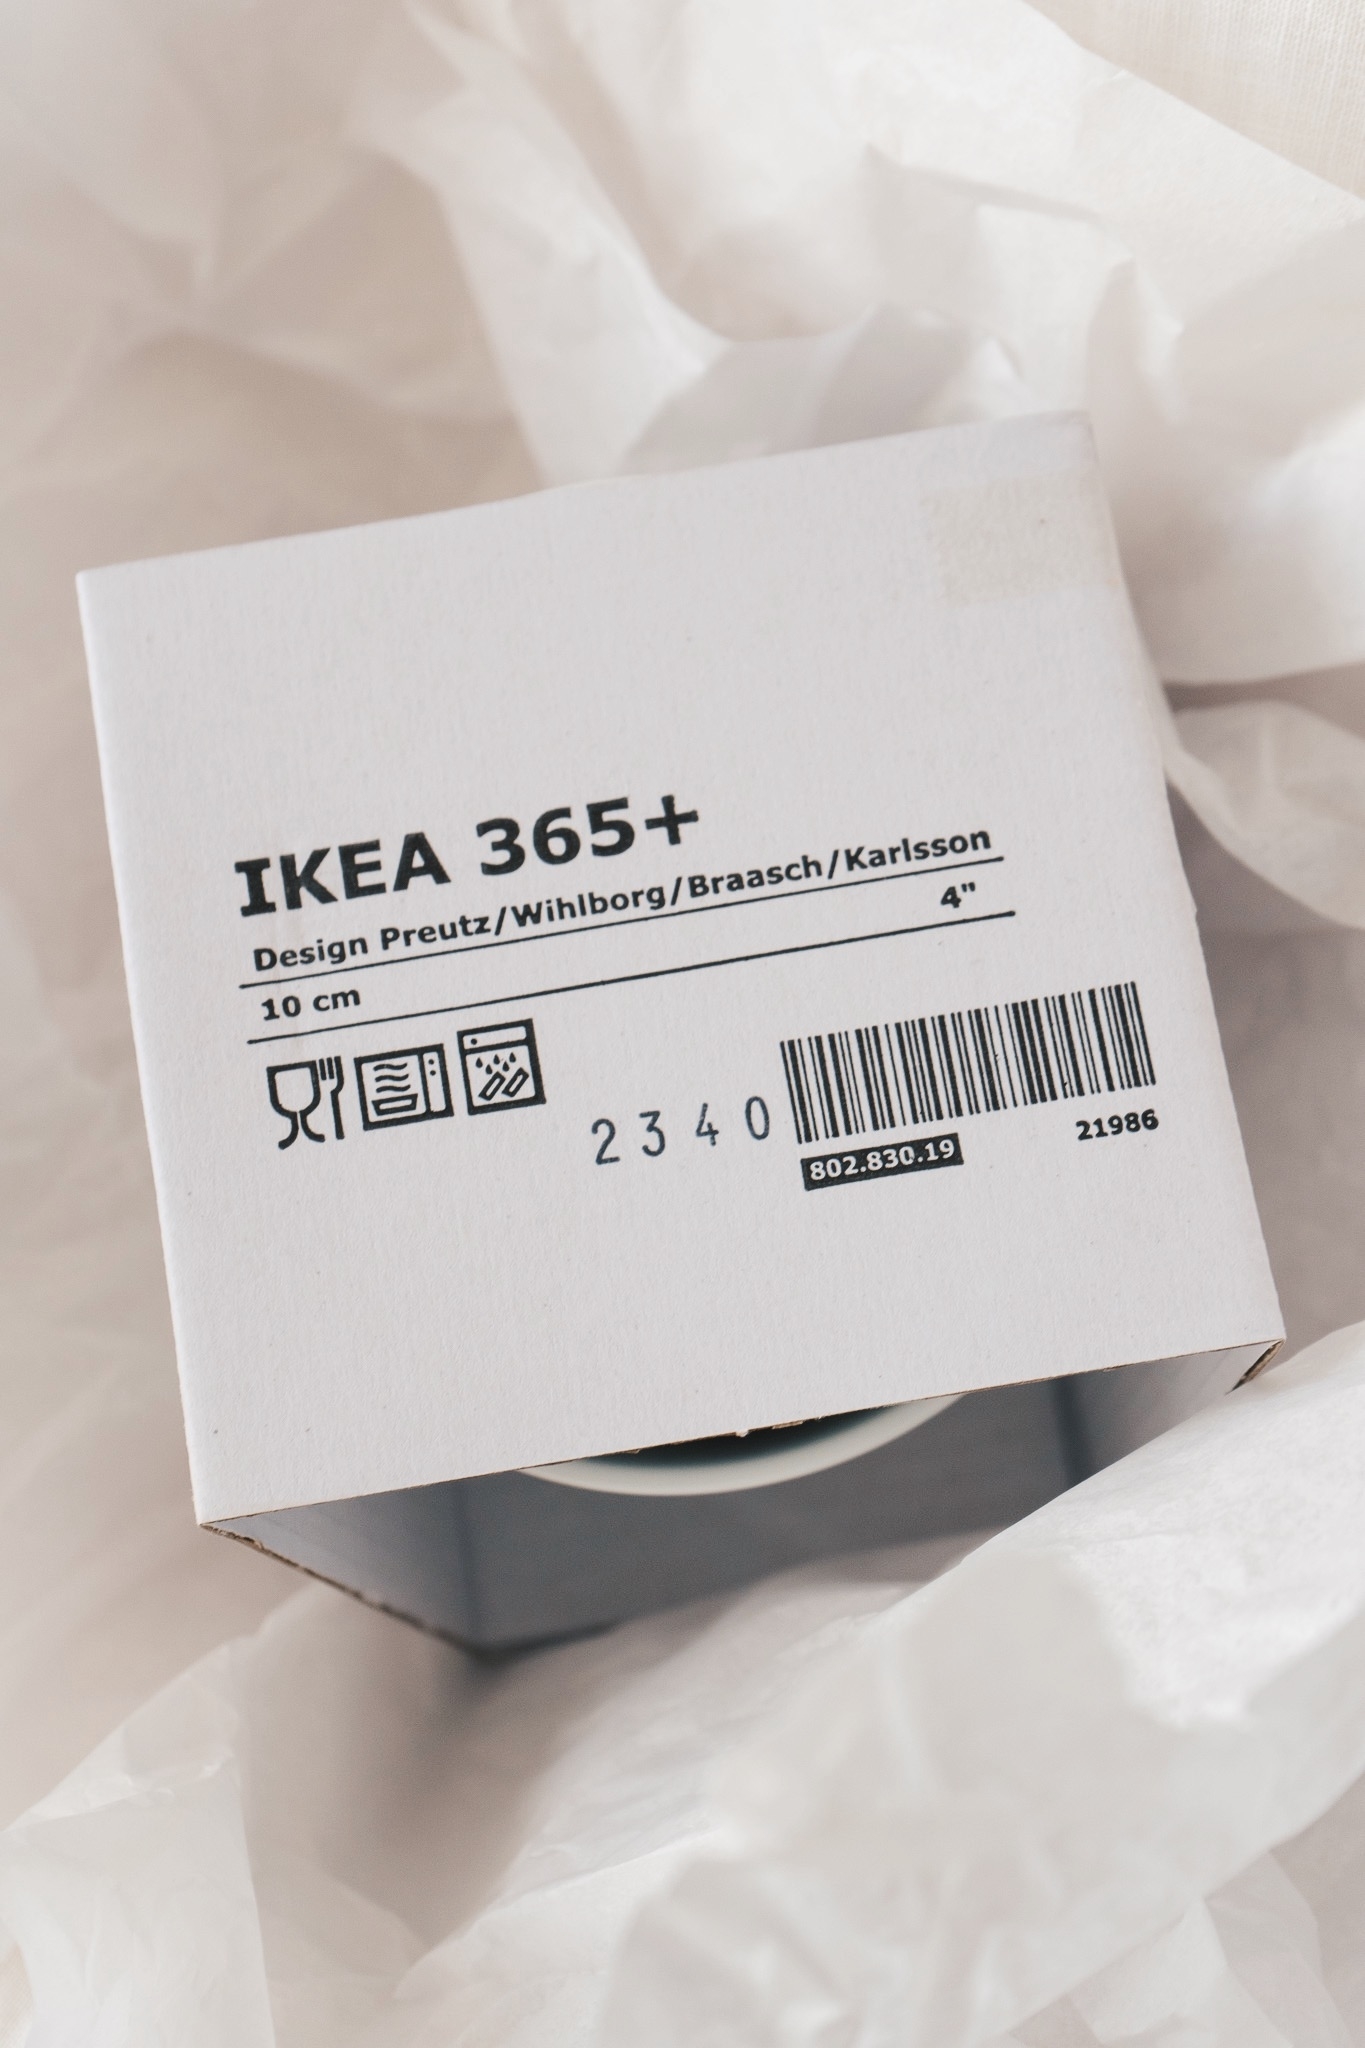 イケアのキッチン雑貨「IKEA 365+ ボウル 10cm」